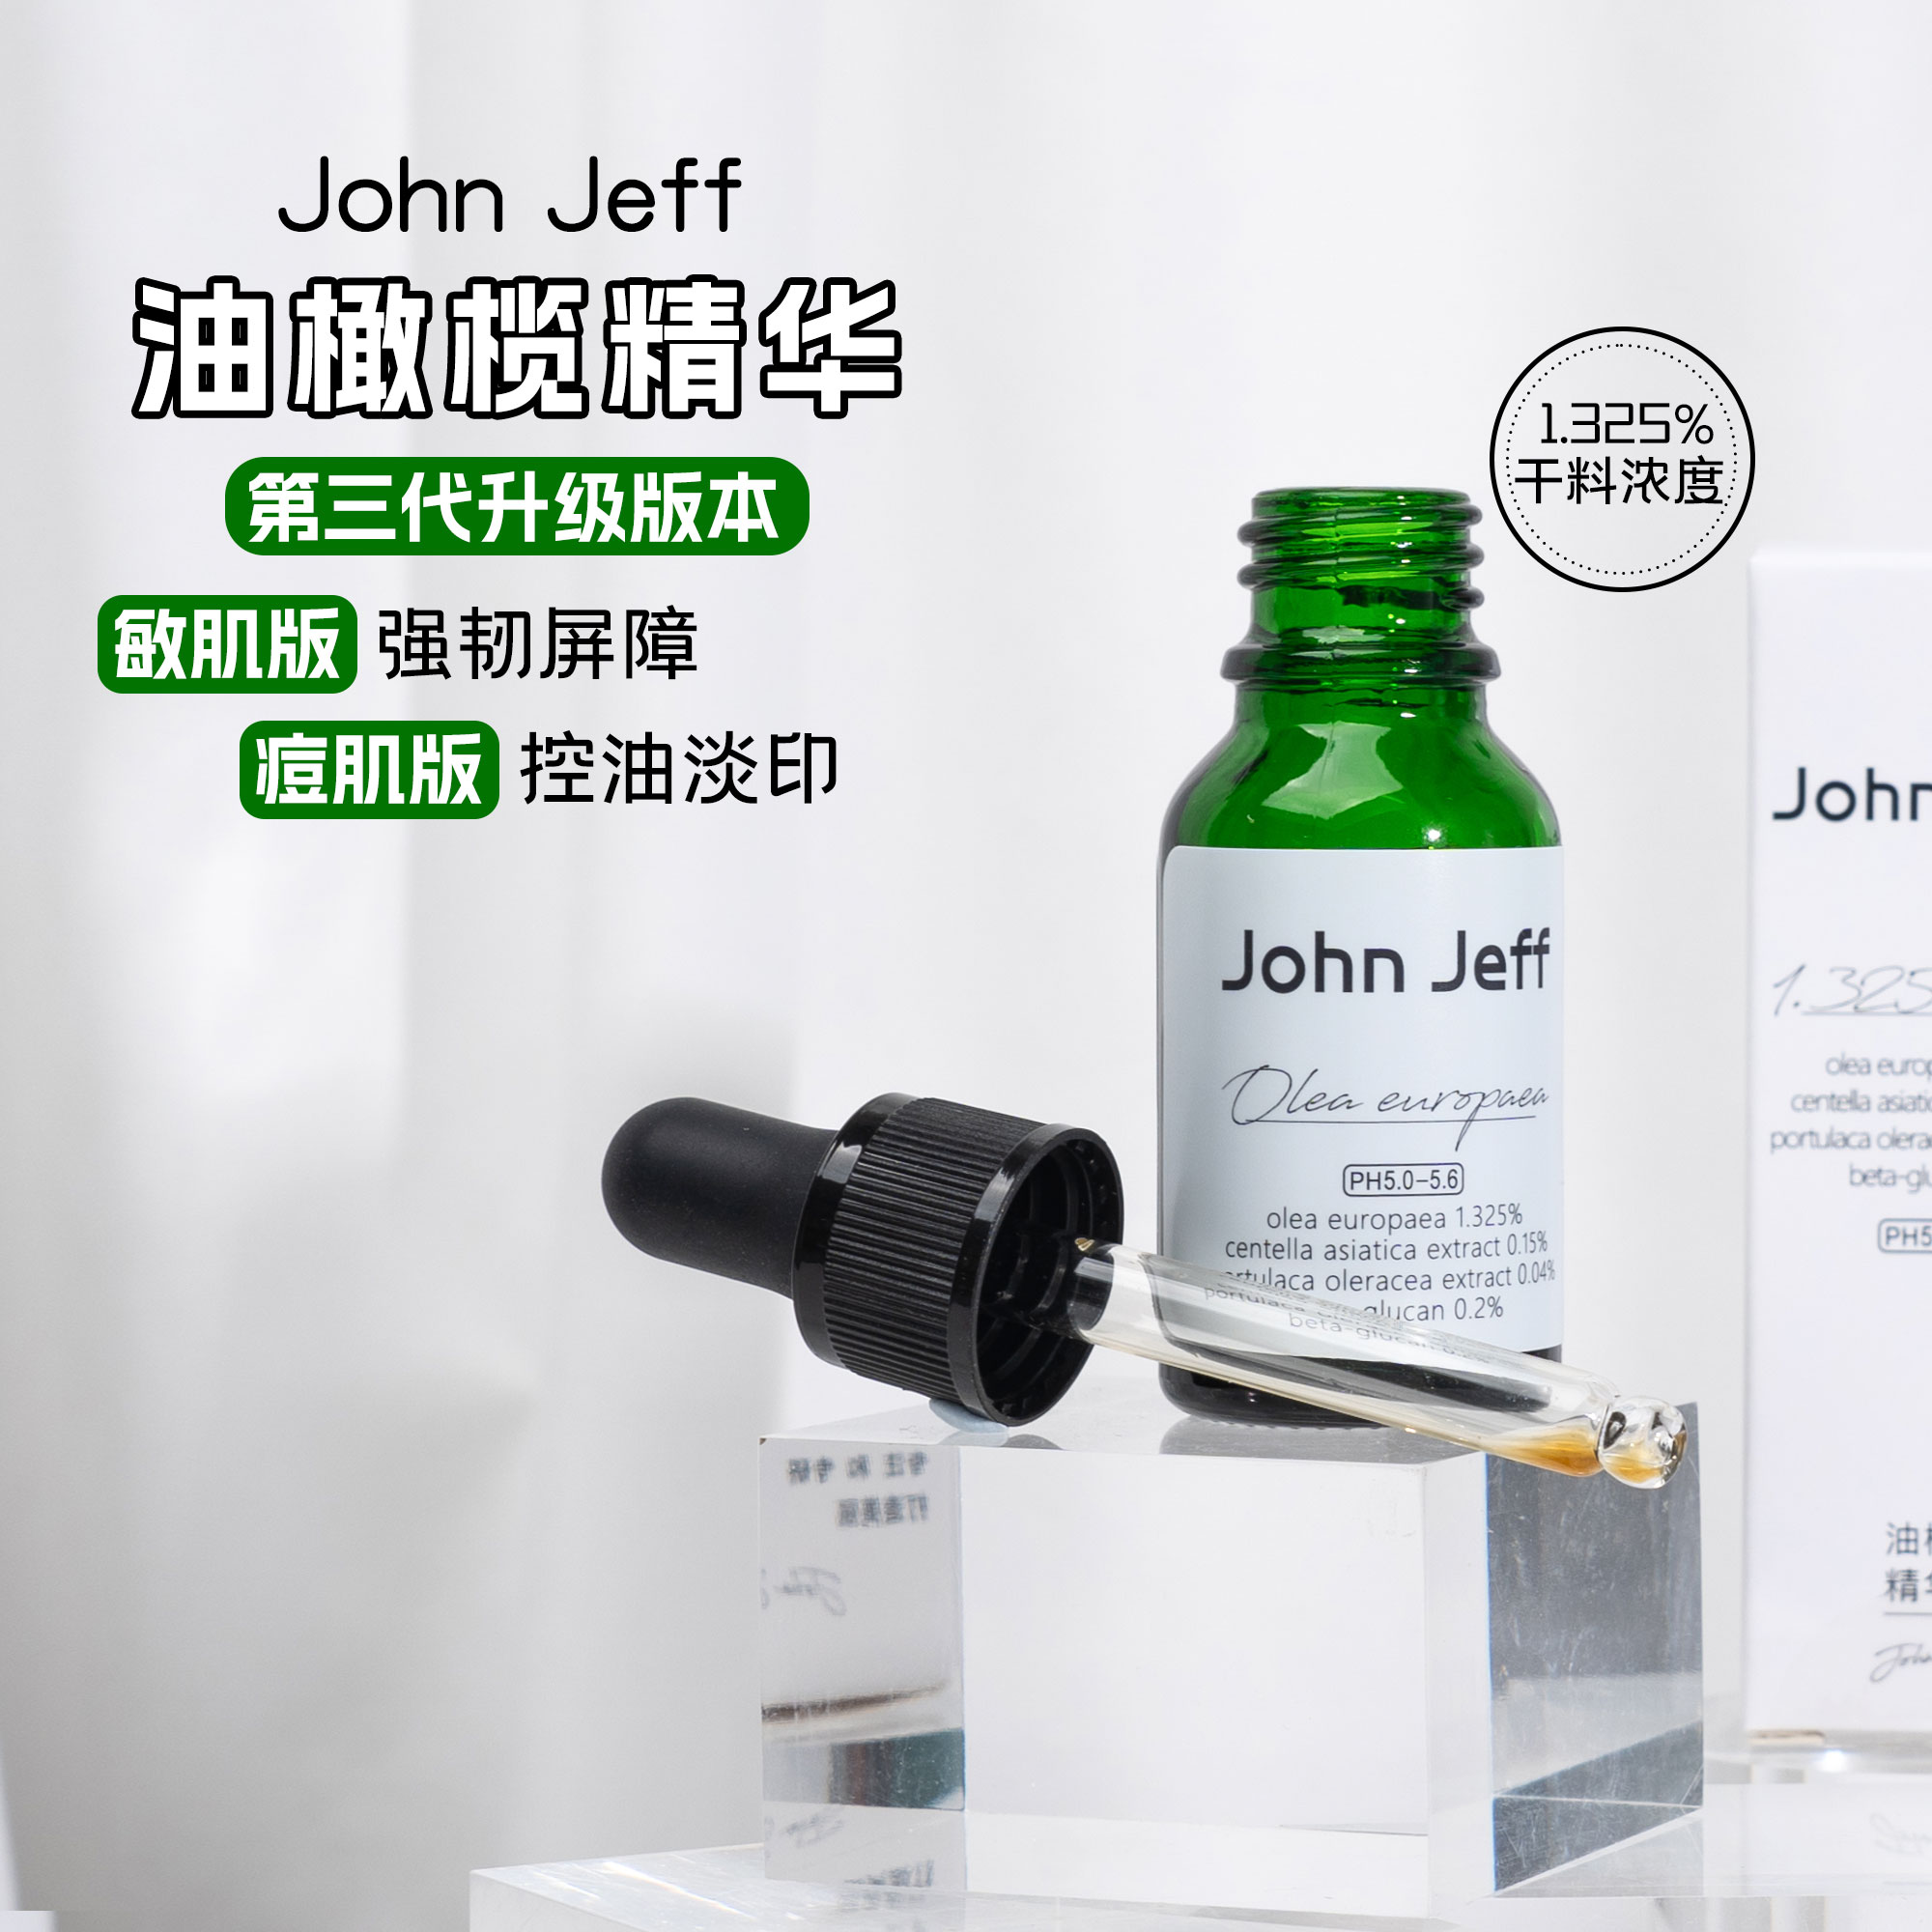 第三代John Jeff1.325%油橄榄面部精华液舒缓肌肤控油